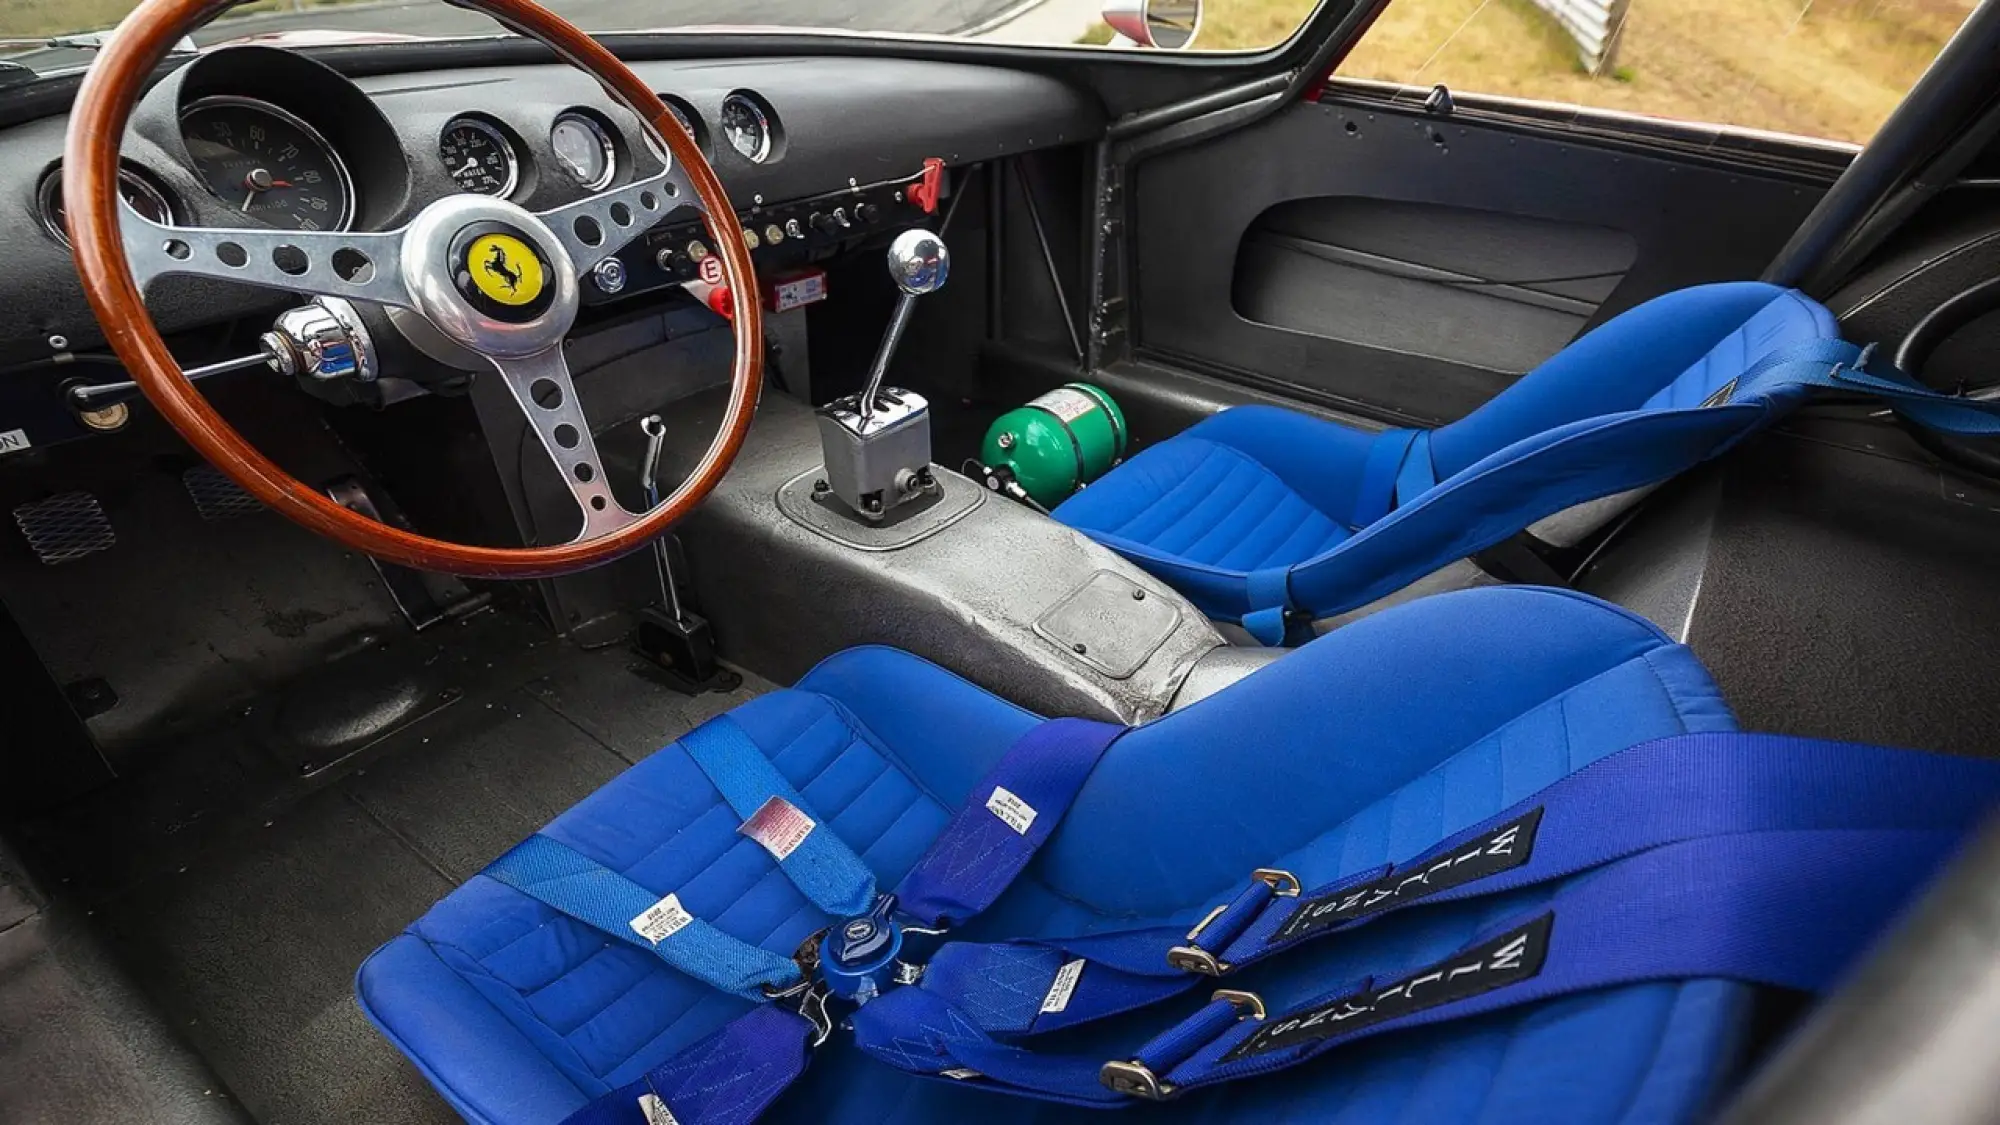 Ferrari 250 GTO vendita record 54 milioni - 13